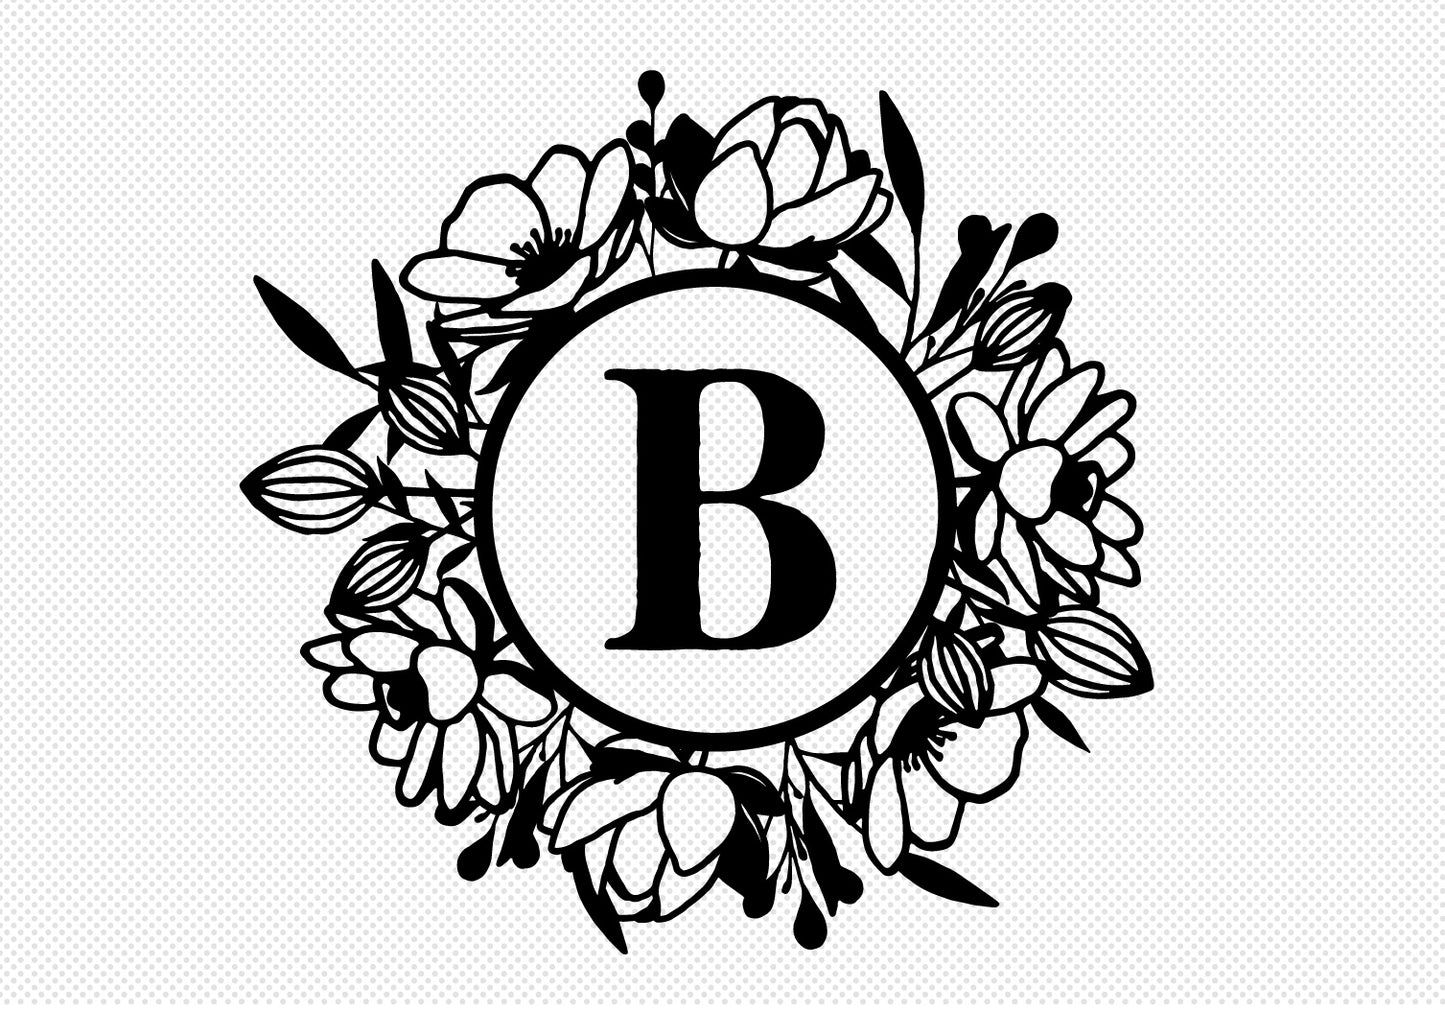 Floral Monogram SVG Bundle | 27 Pack